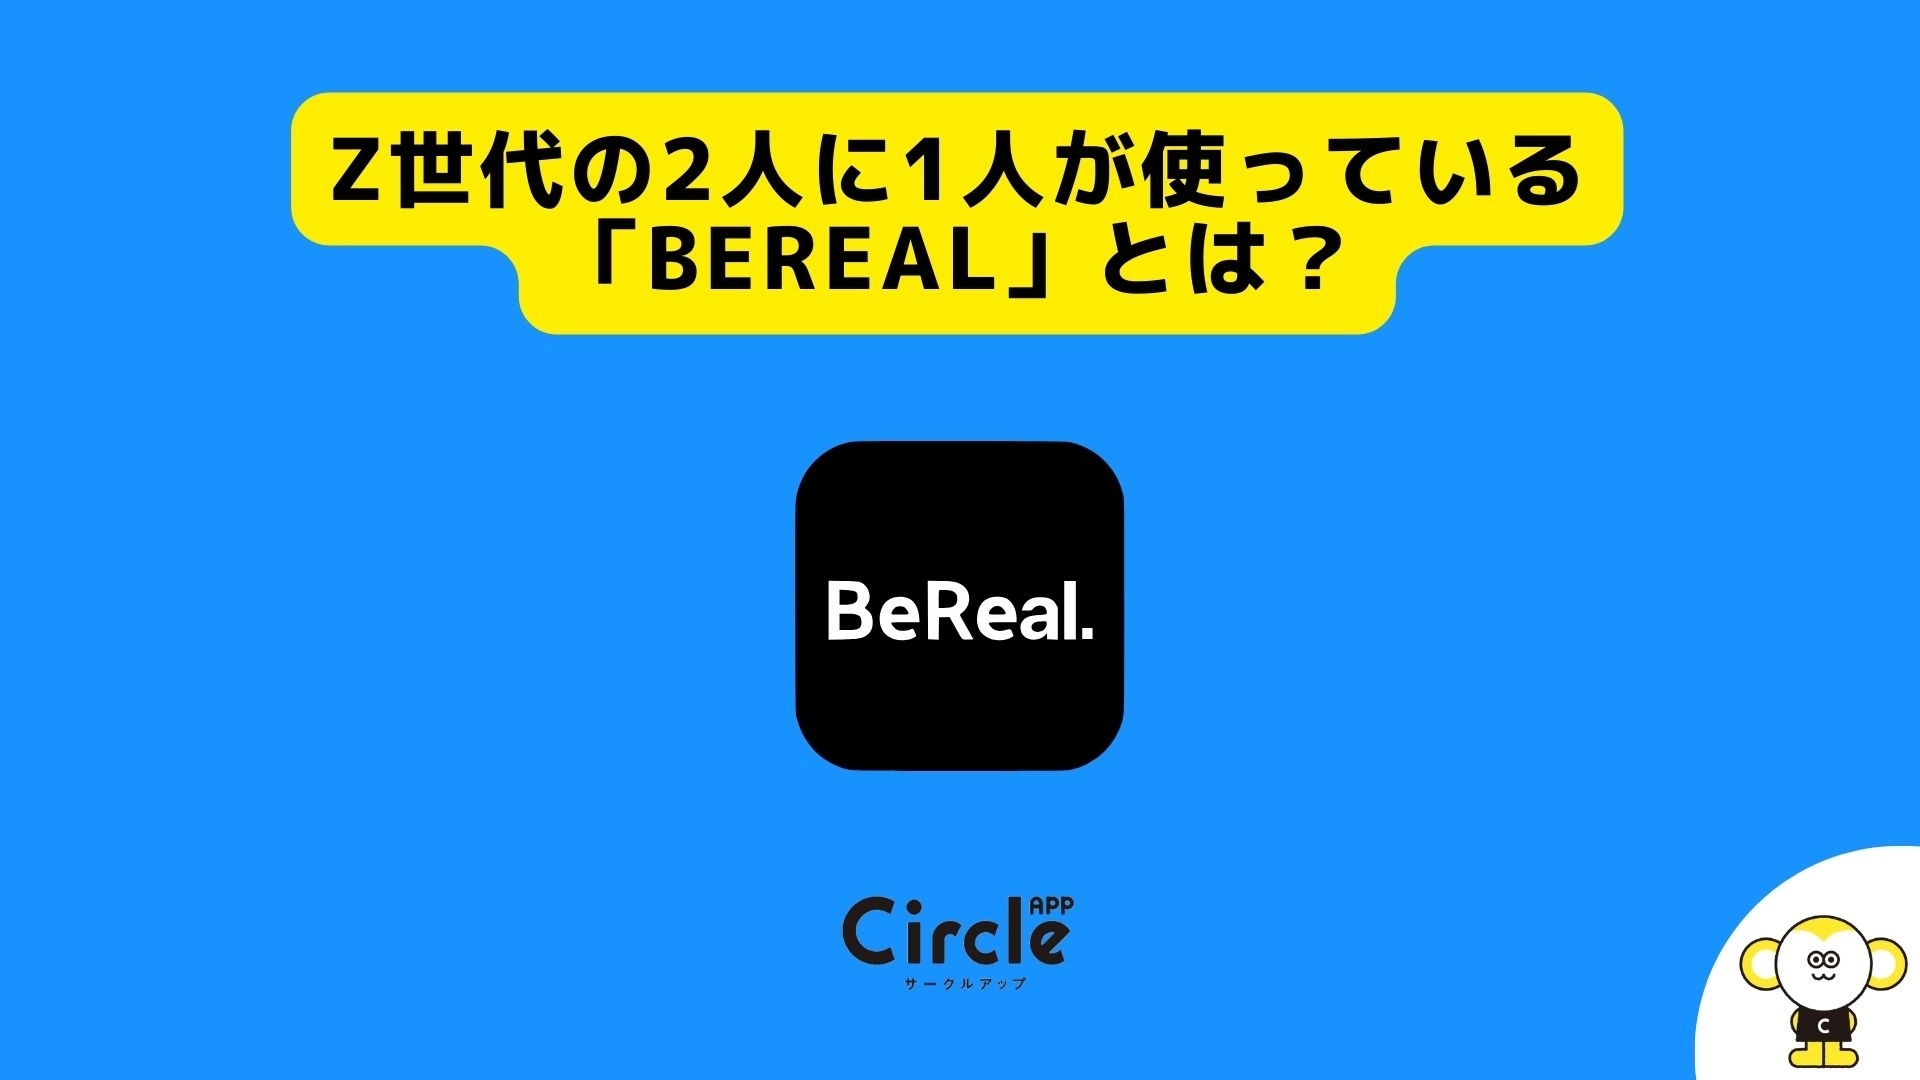 Z世代の2人に1人が使っている「BeReal」とは？